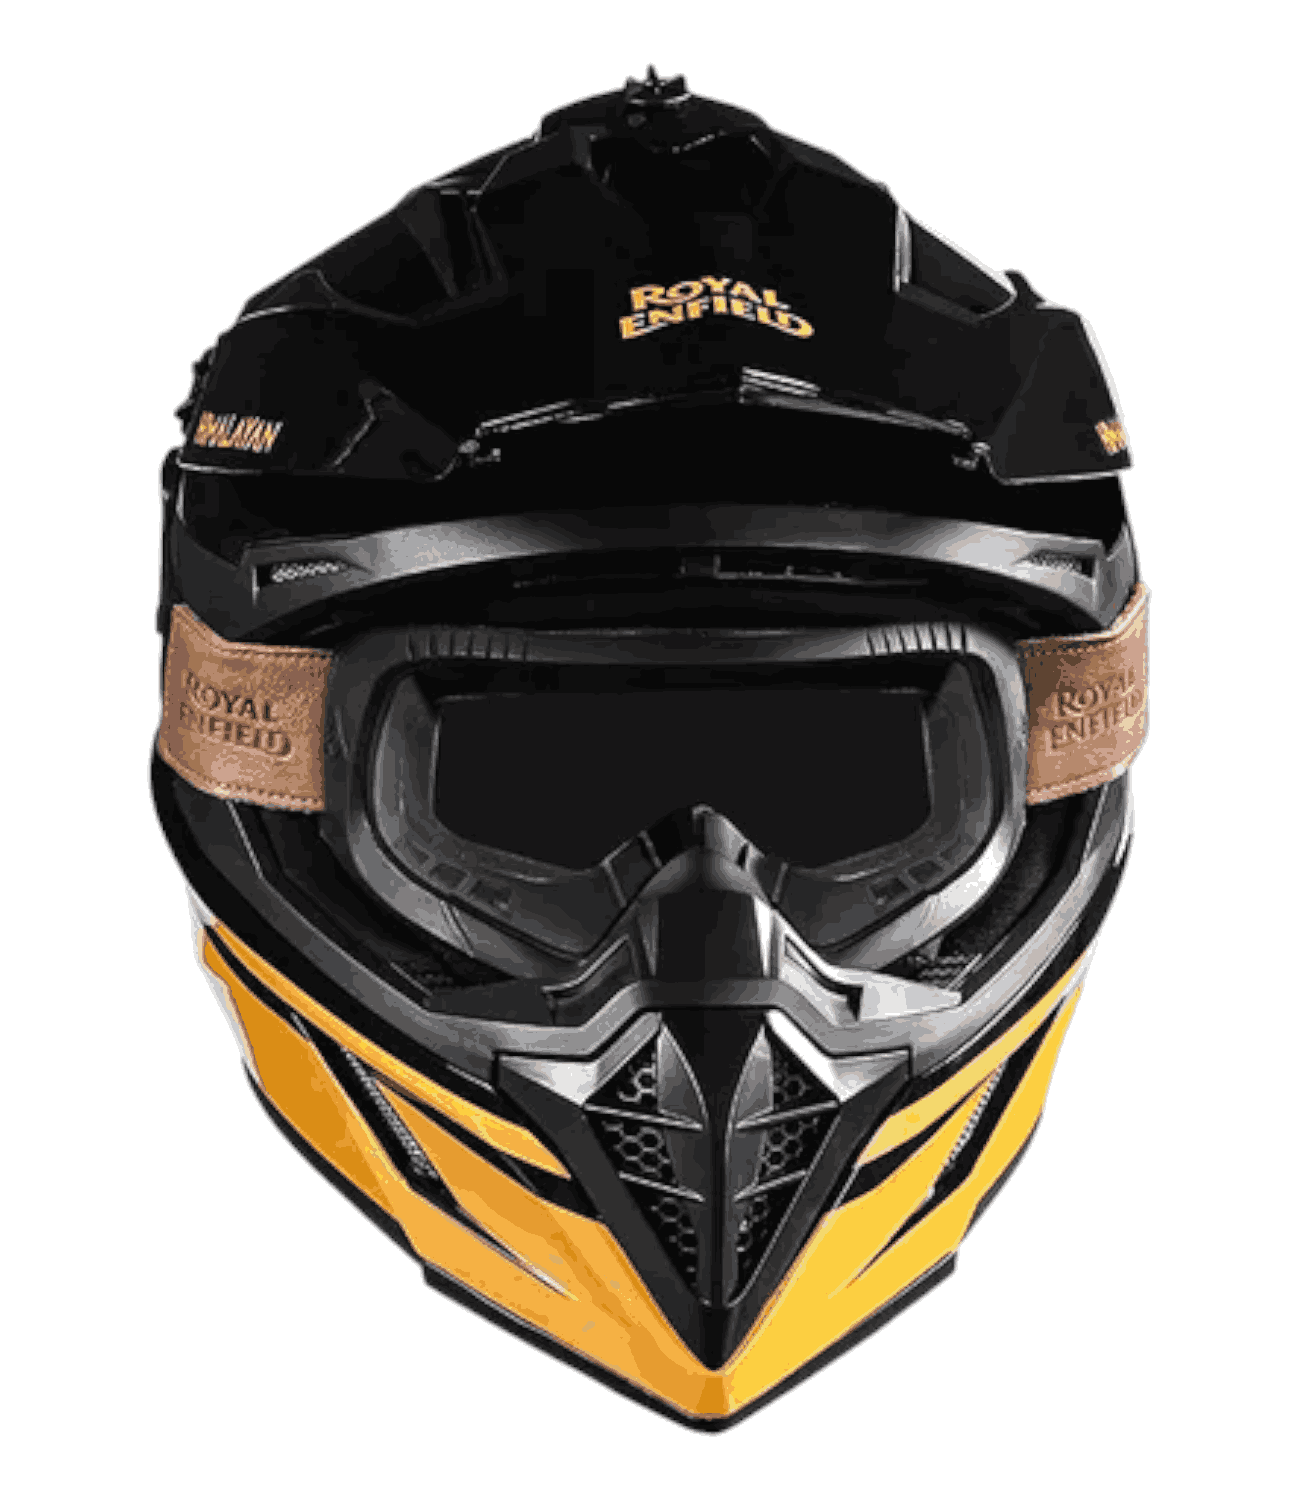 RE Optimus Motocross Helmet - Black